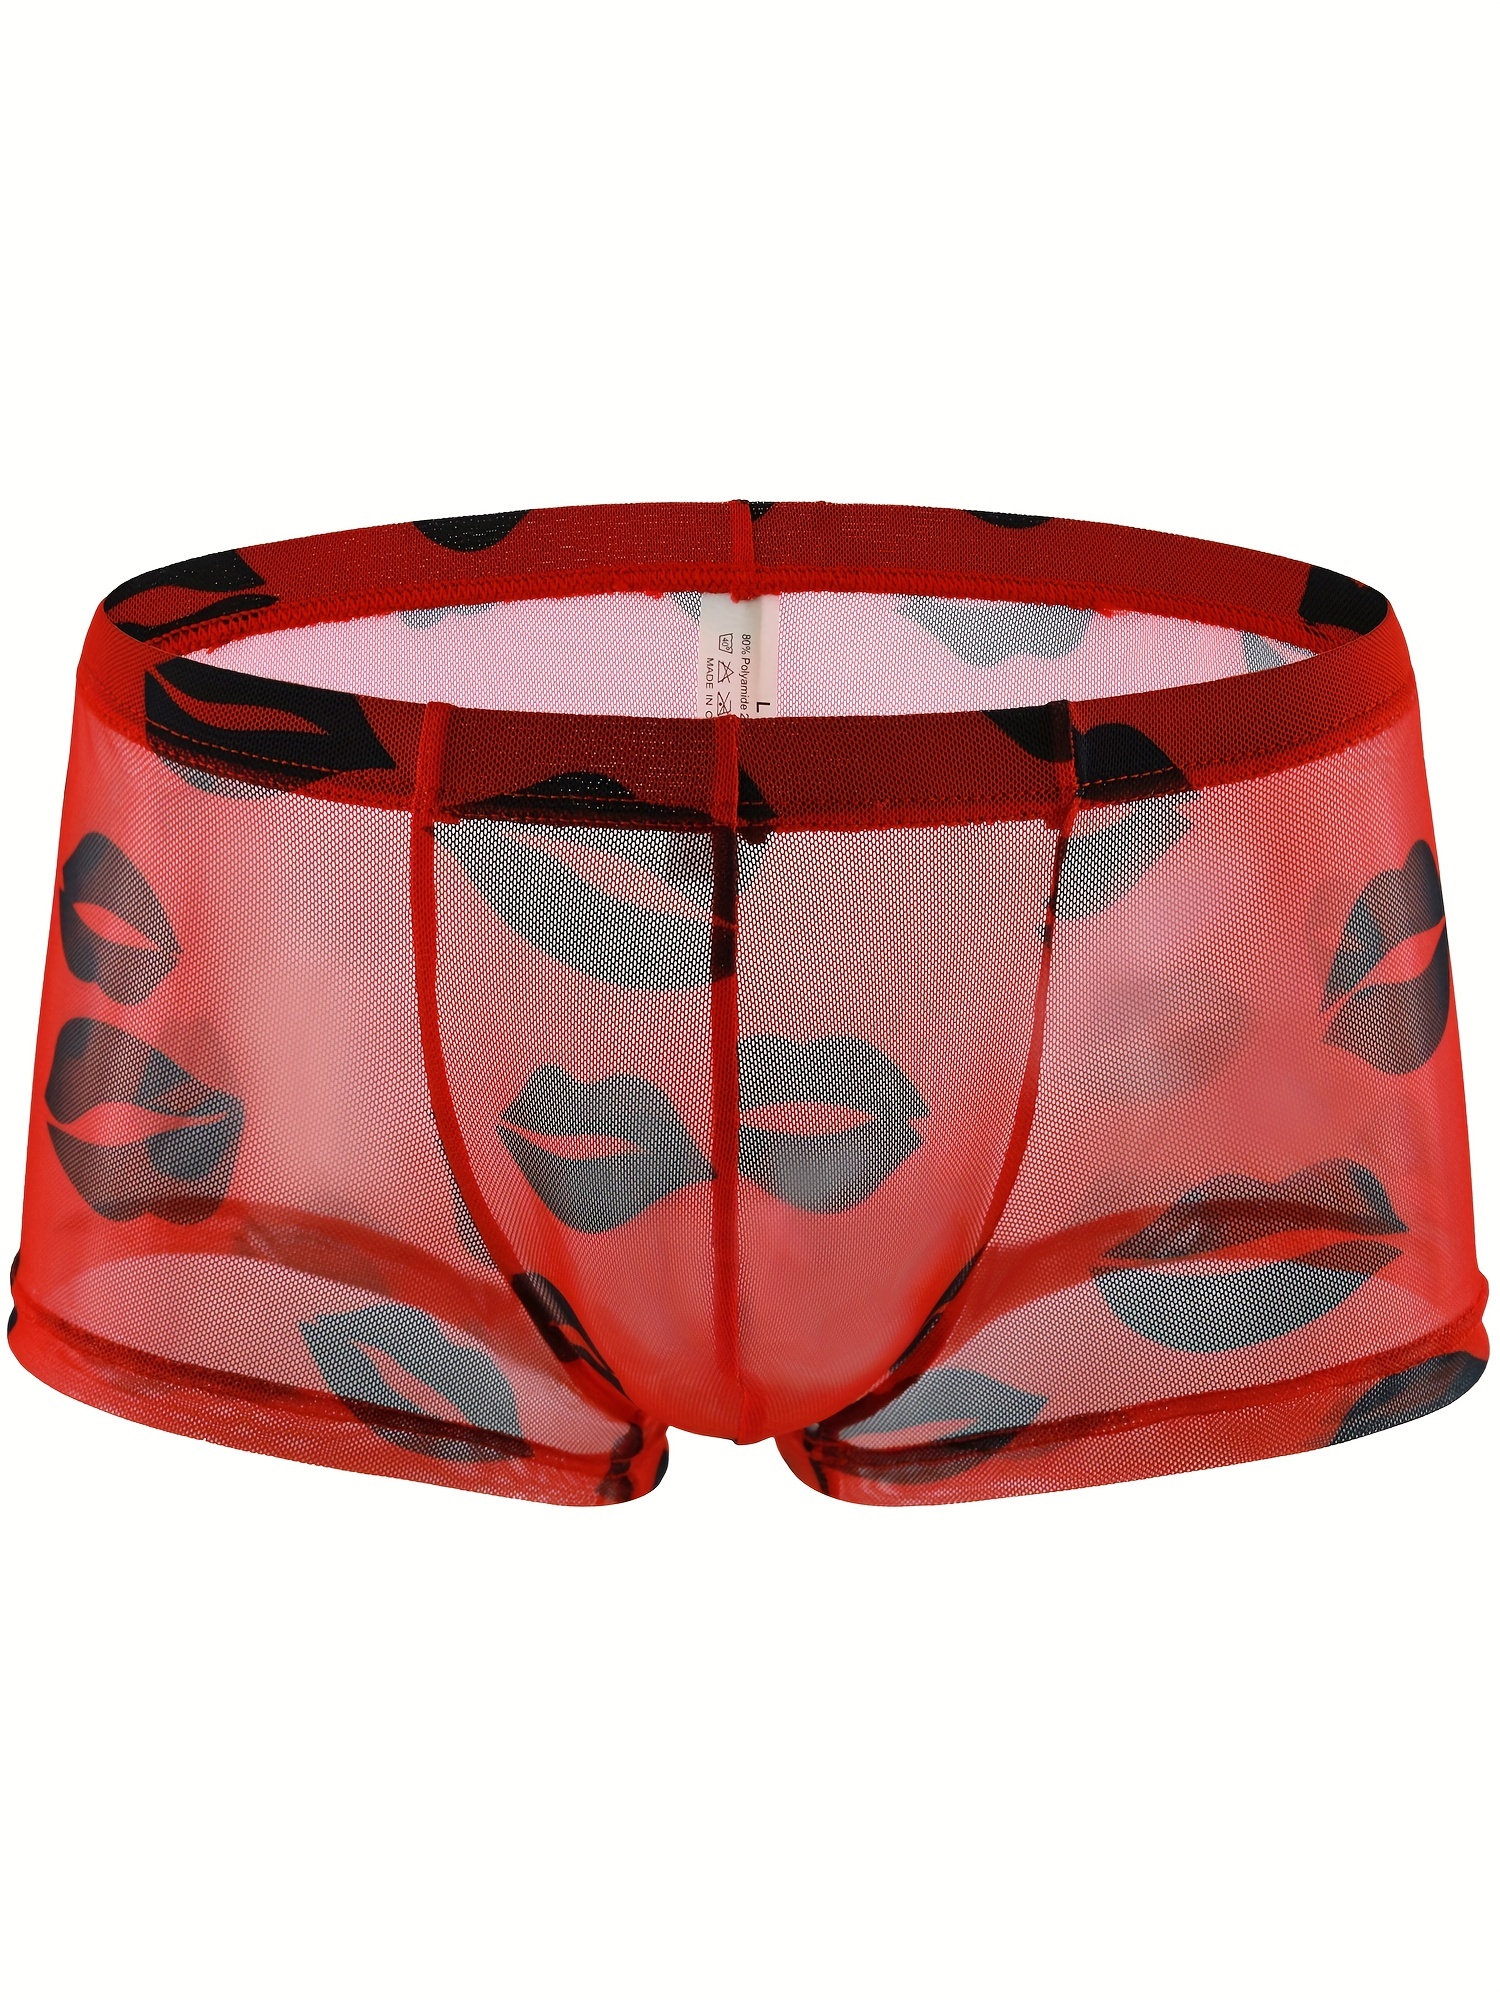 Men's Mesh Boxer Briefs Cooling Breathable Sports Underwear, Unique lip  print love heart Trunks,unique gifts for boyfriend,Sizes 2XS-8XL